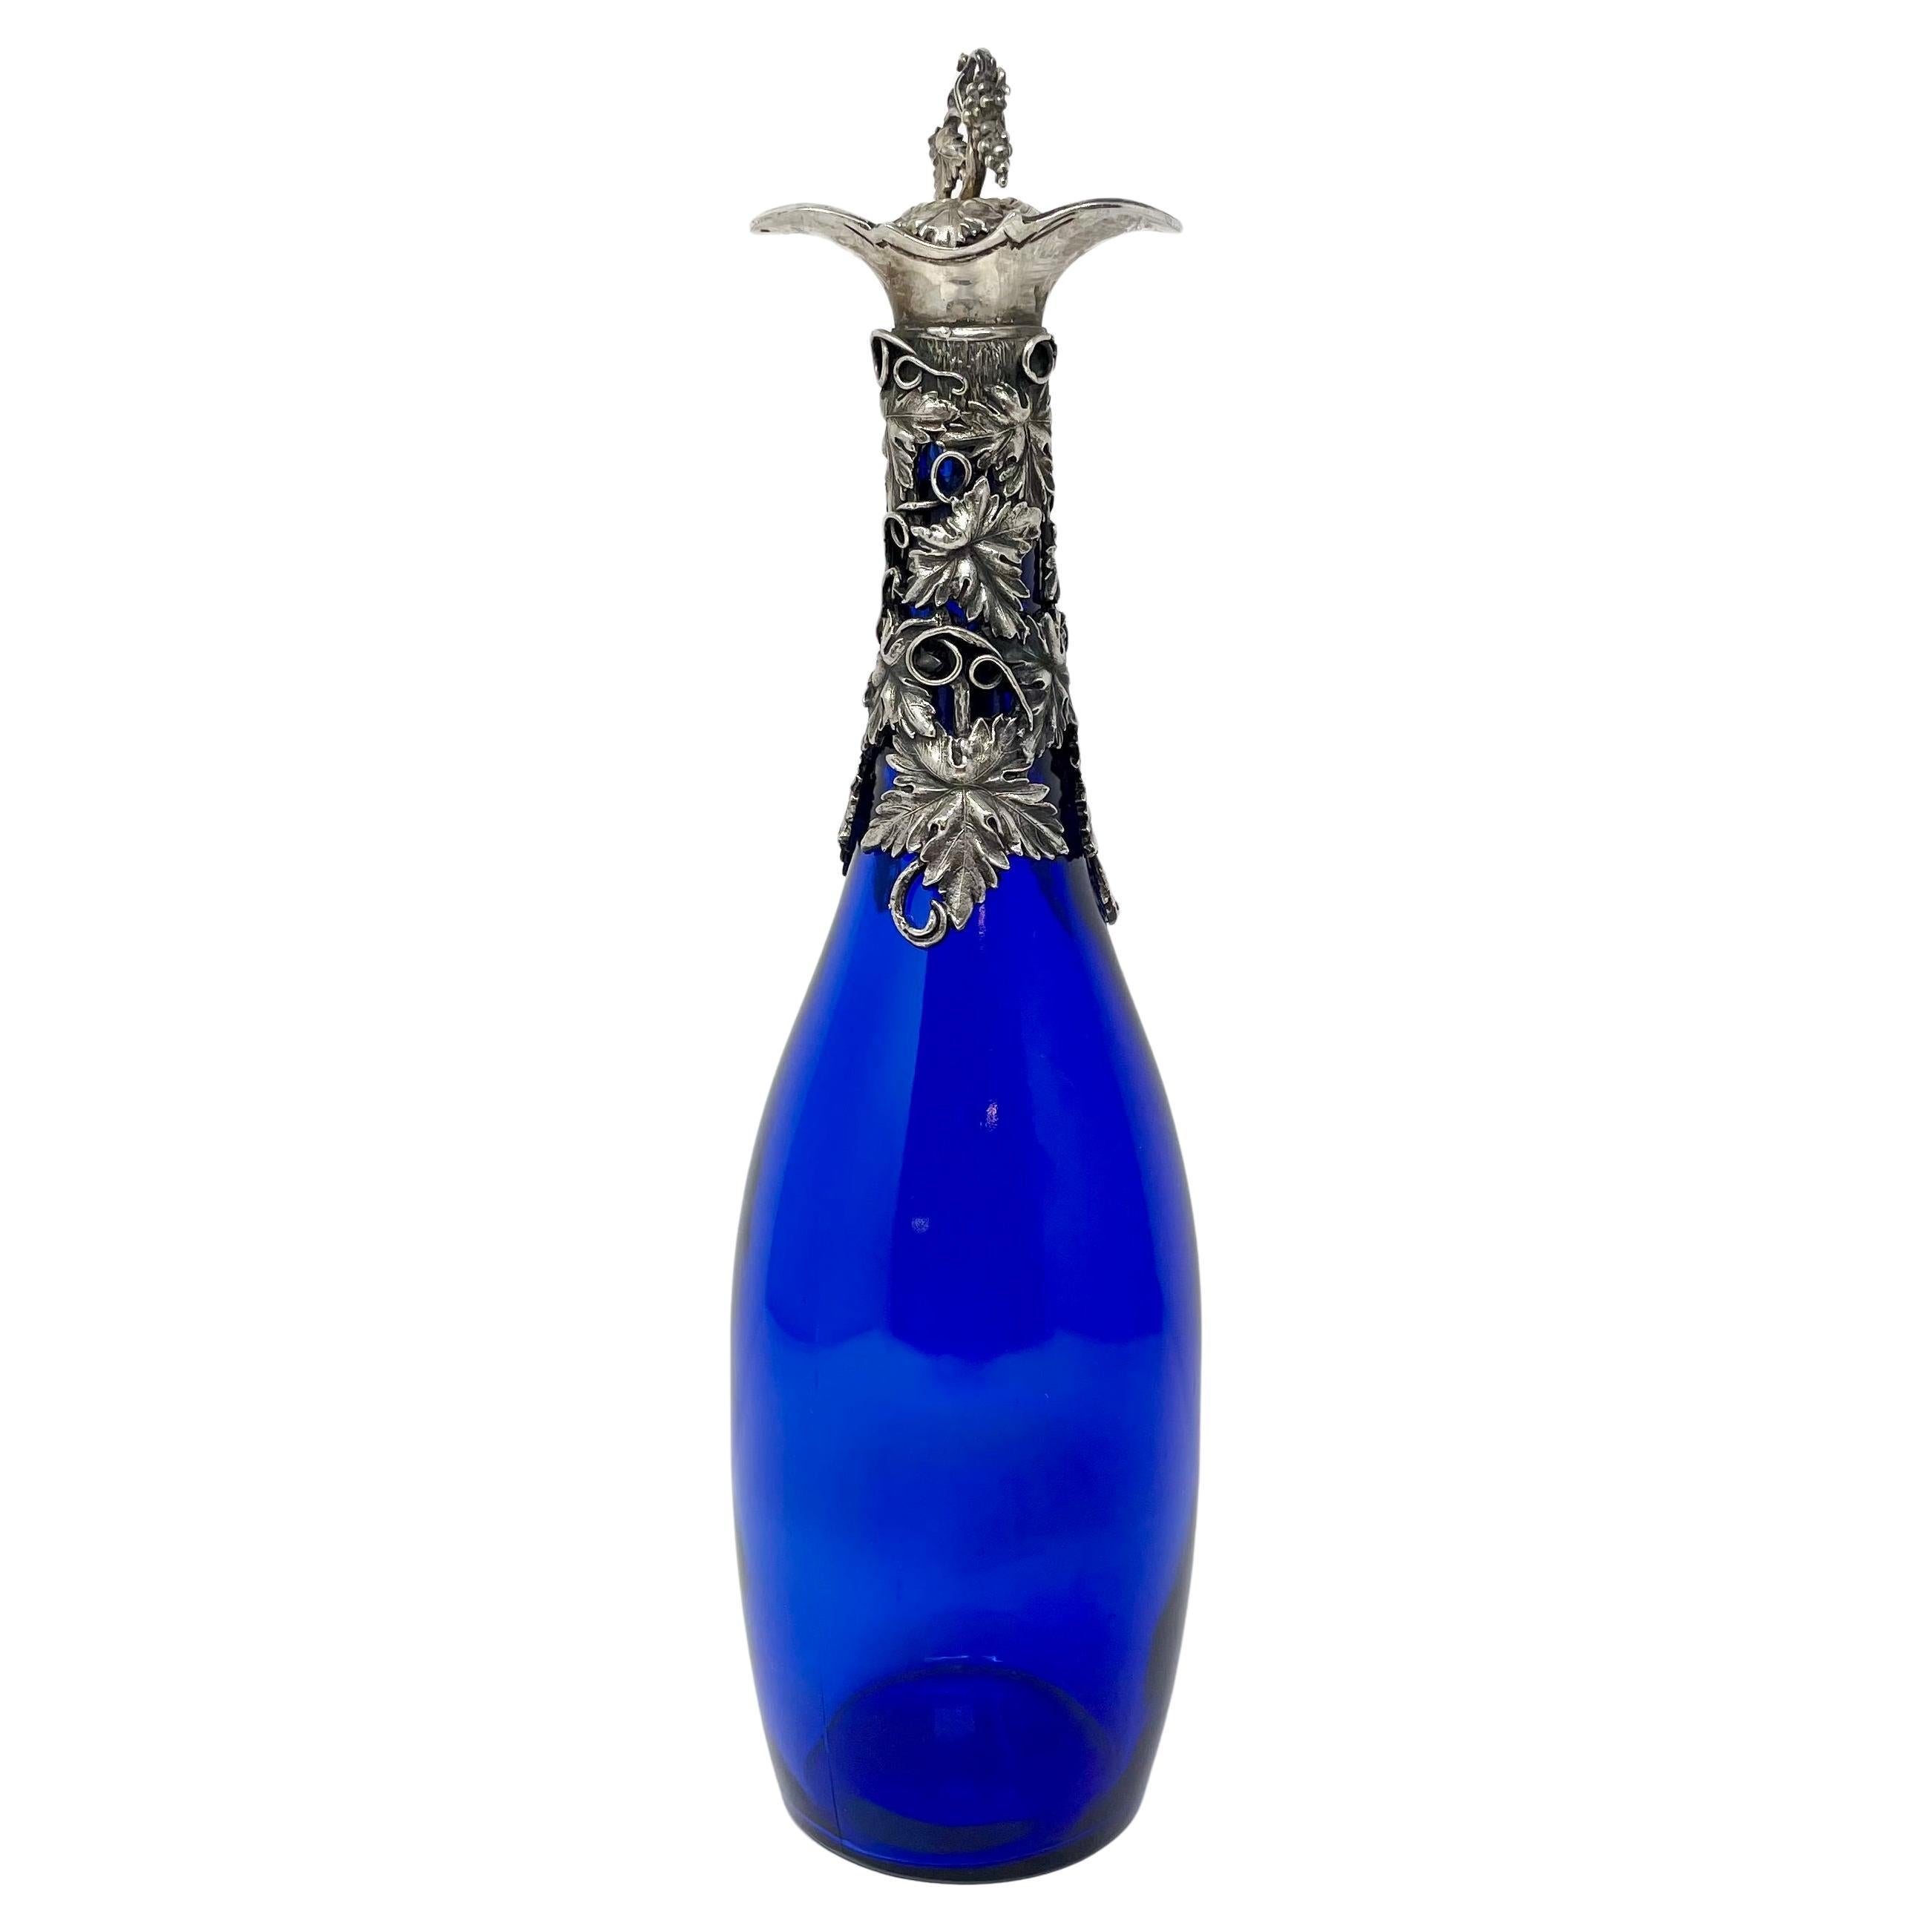 Ancienne bouteille de liqueur en verre bleu cobalt avec bouchon en argent sterling, vers 1890-1900.